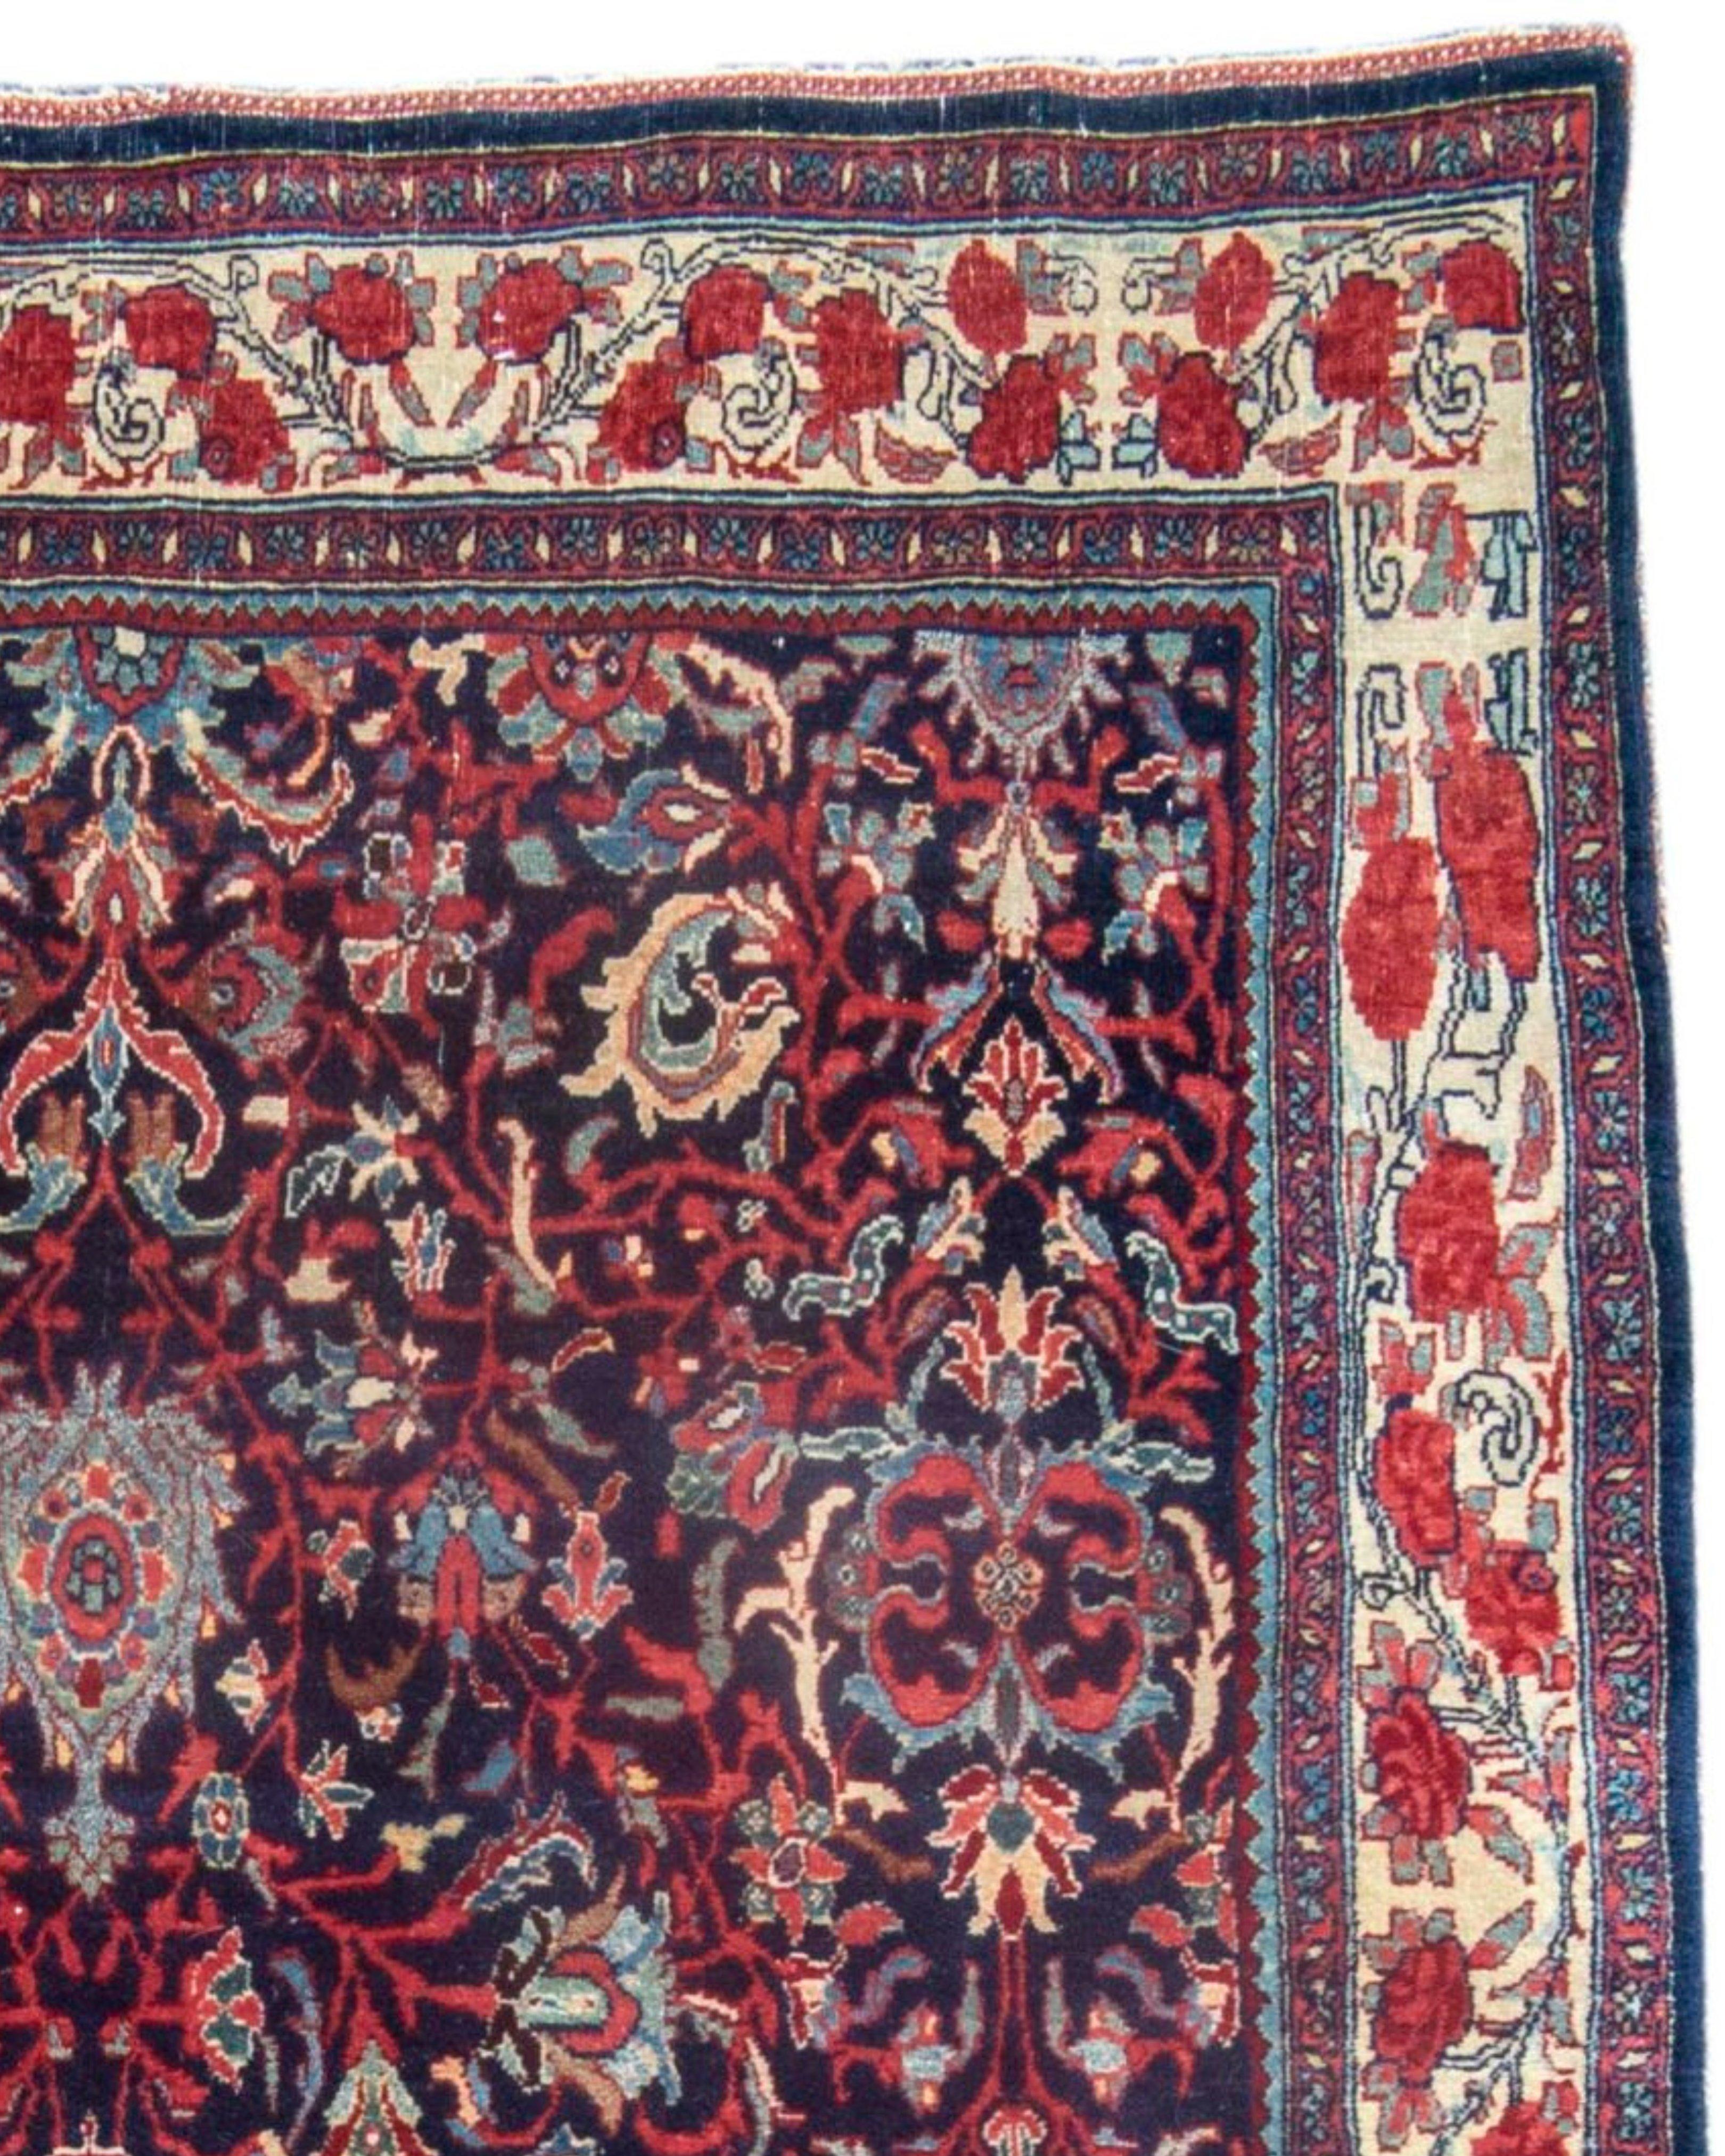 Antiker persischer Bidjar-Teppich, frühes 20. Jahrhundert

Zusätzliche Informationen
Abmessungen: 4'6